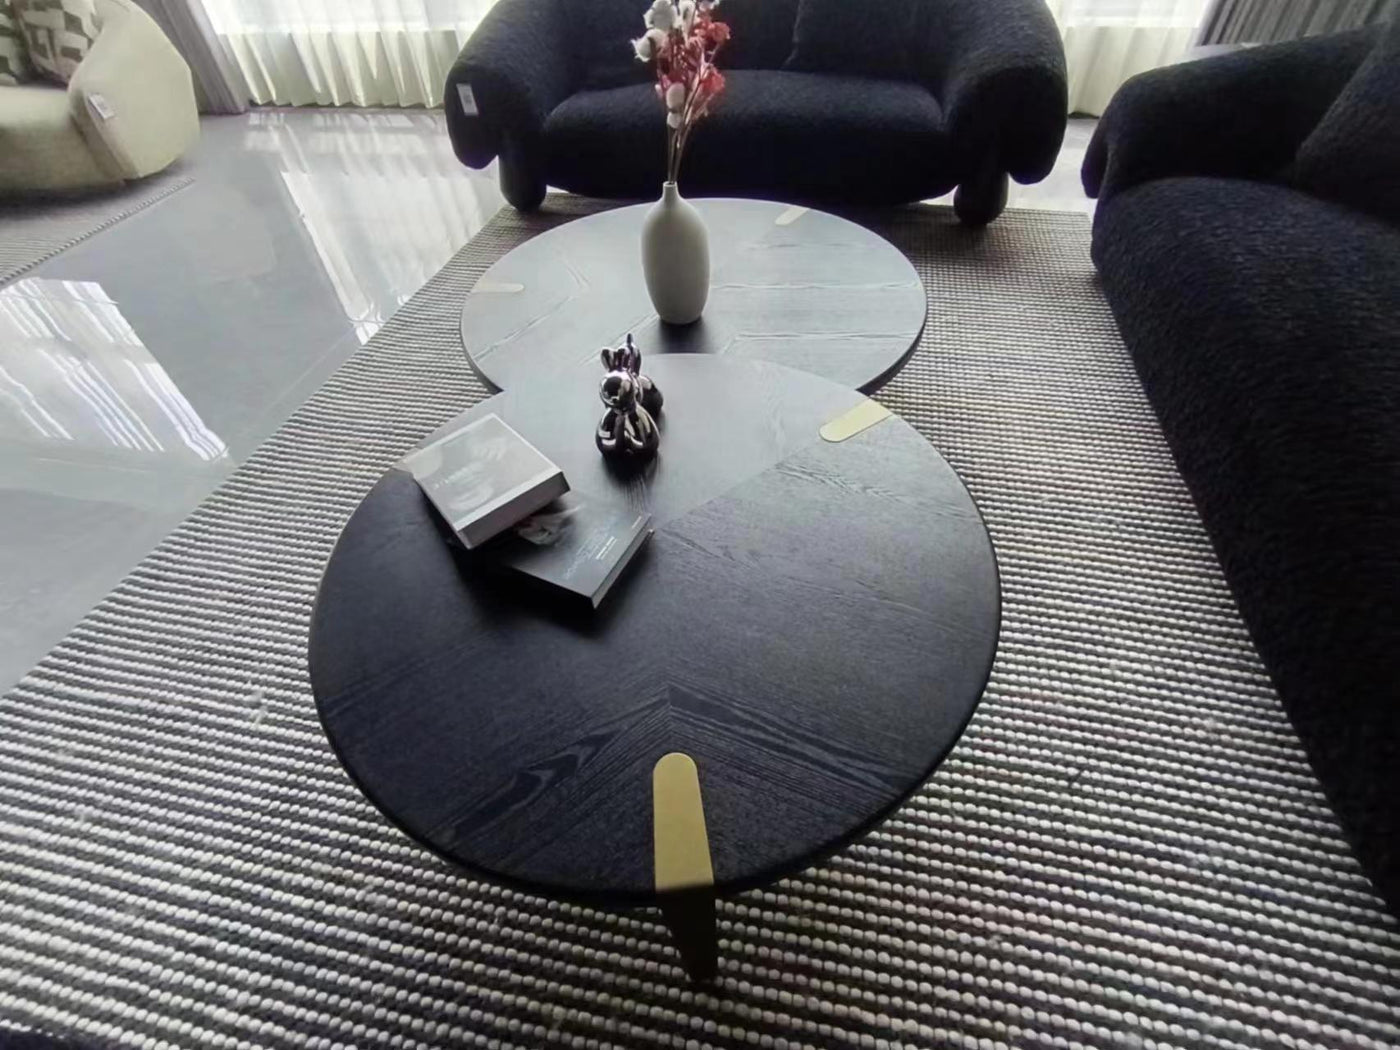 Levante Coffee Table Large - Future Classics Furniture